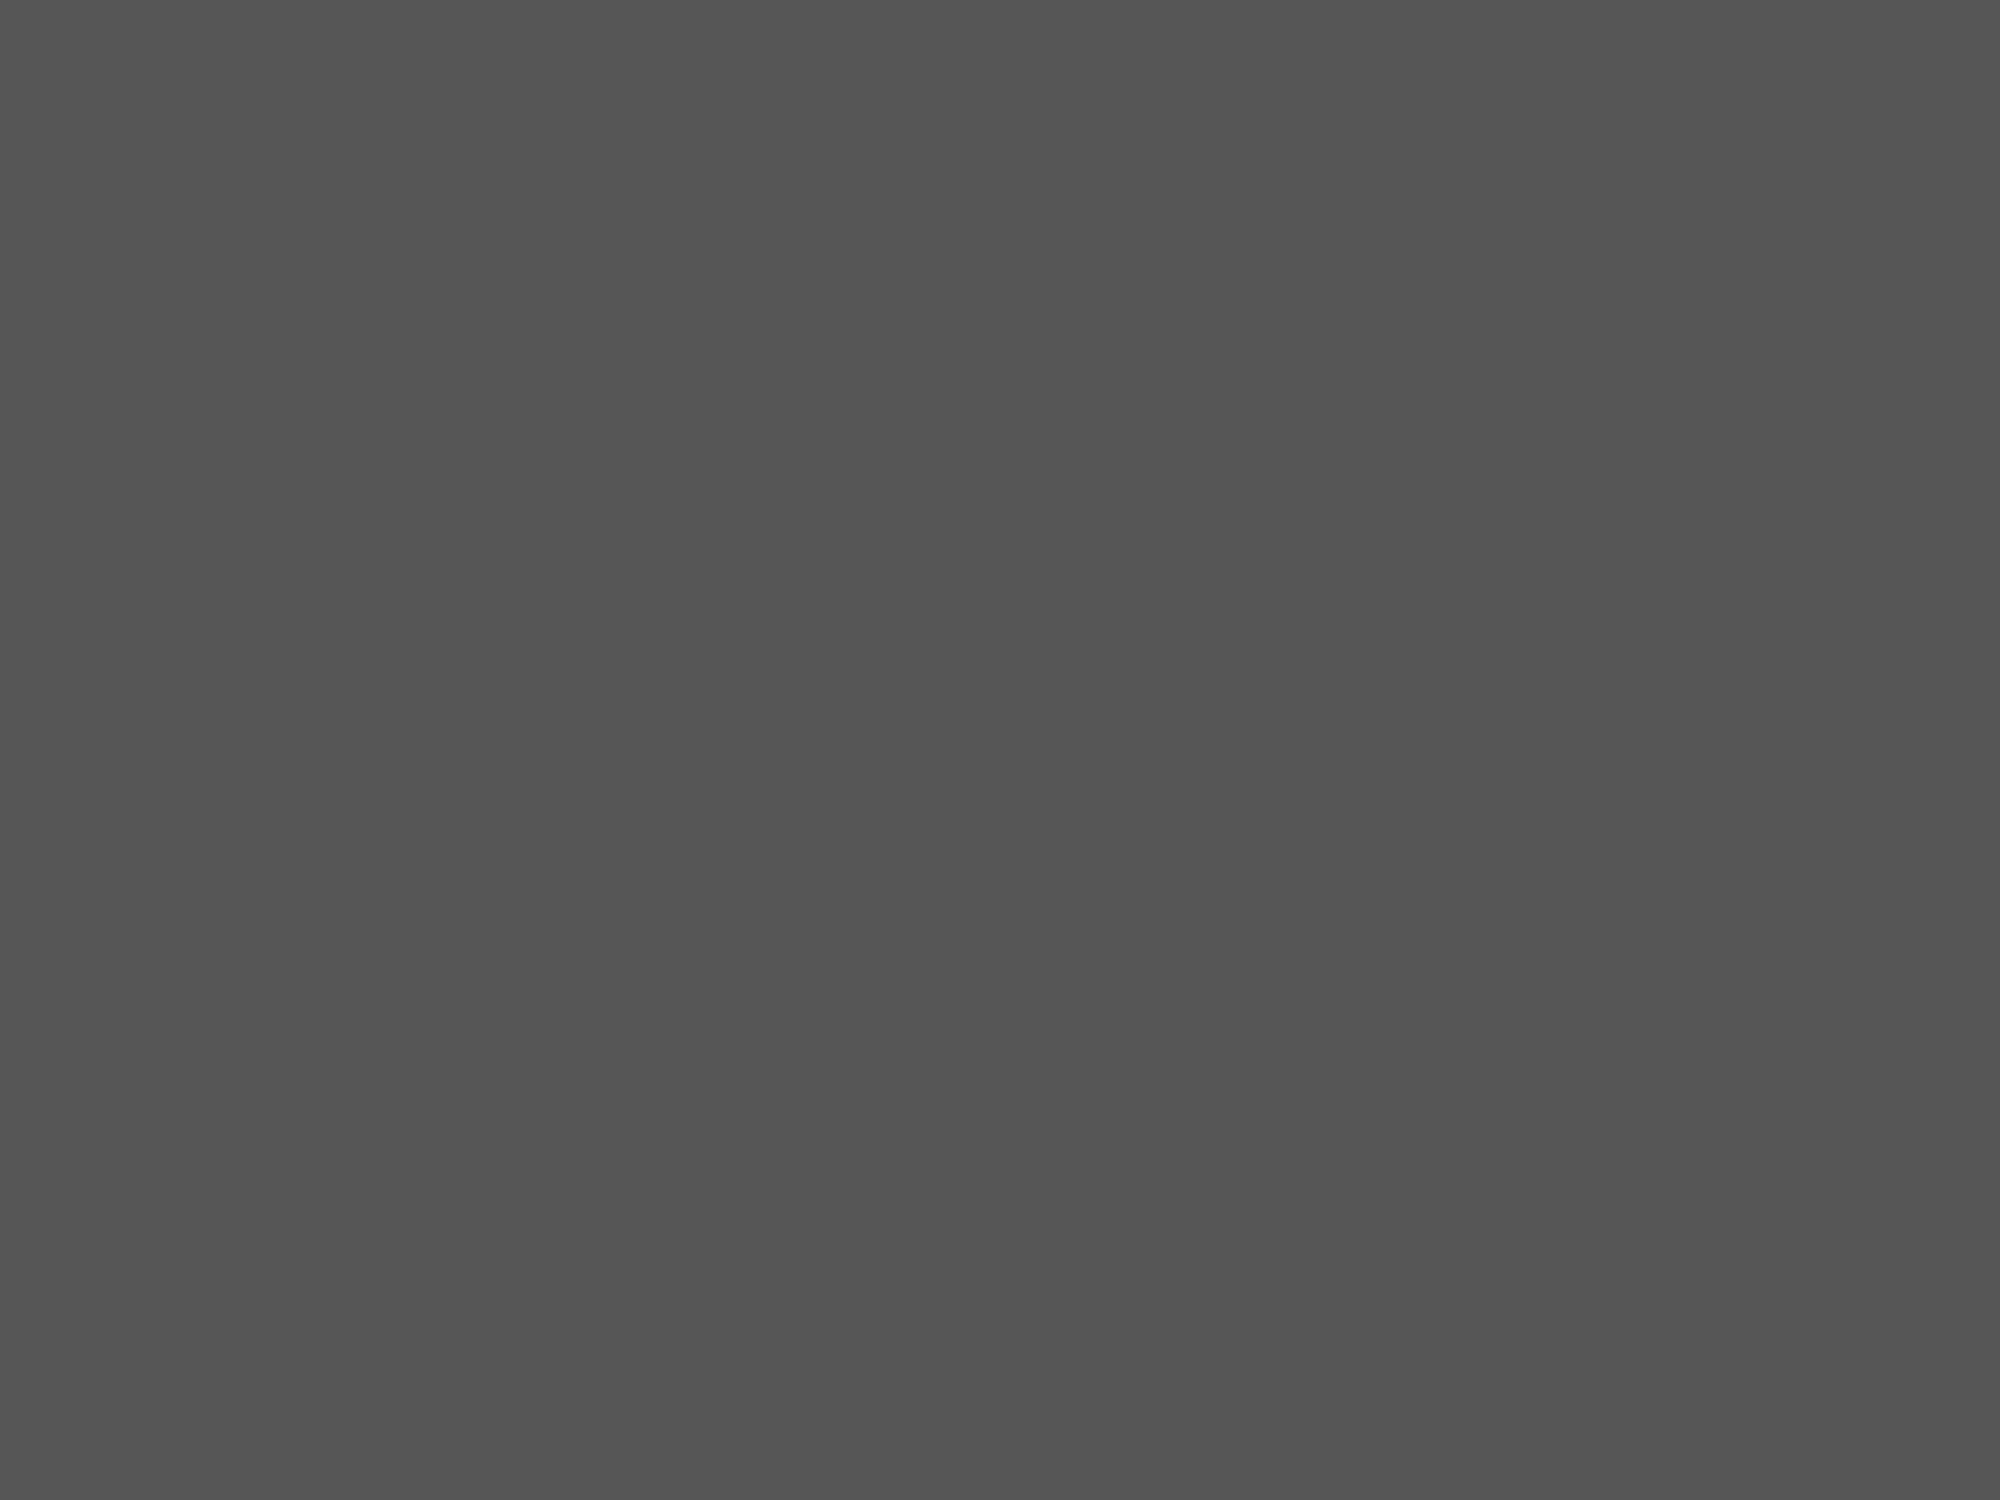 Анастасия Вертинская на занятиях по сценическому движению в Высшем театральном училище им. Б.В. Щукина. 1964 год. Фотография: Валерий Генде-Роте / ТАСС